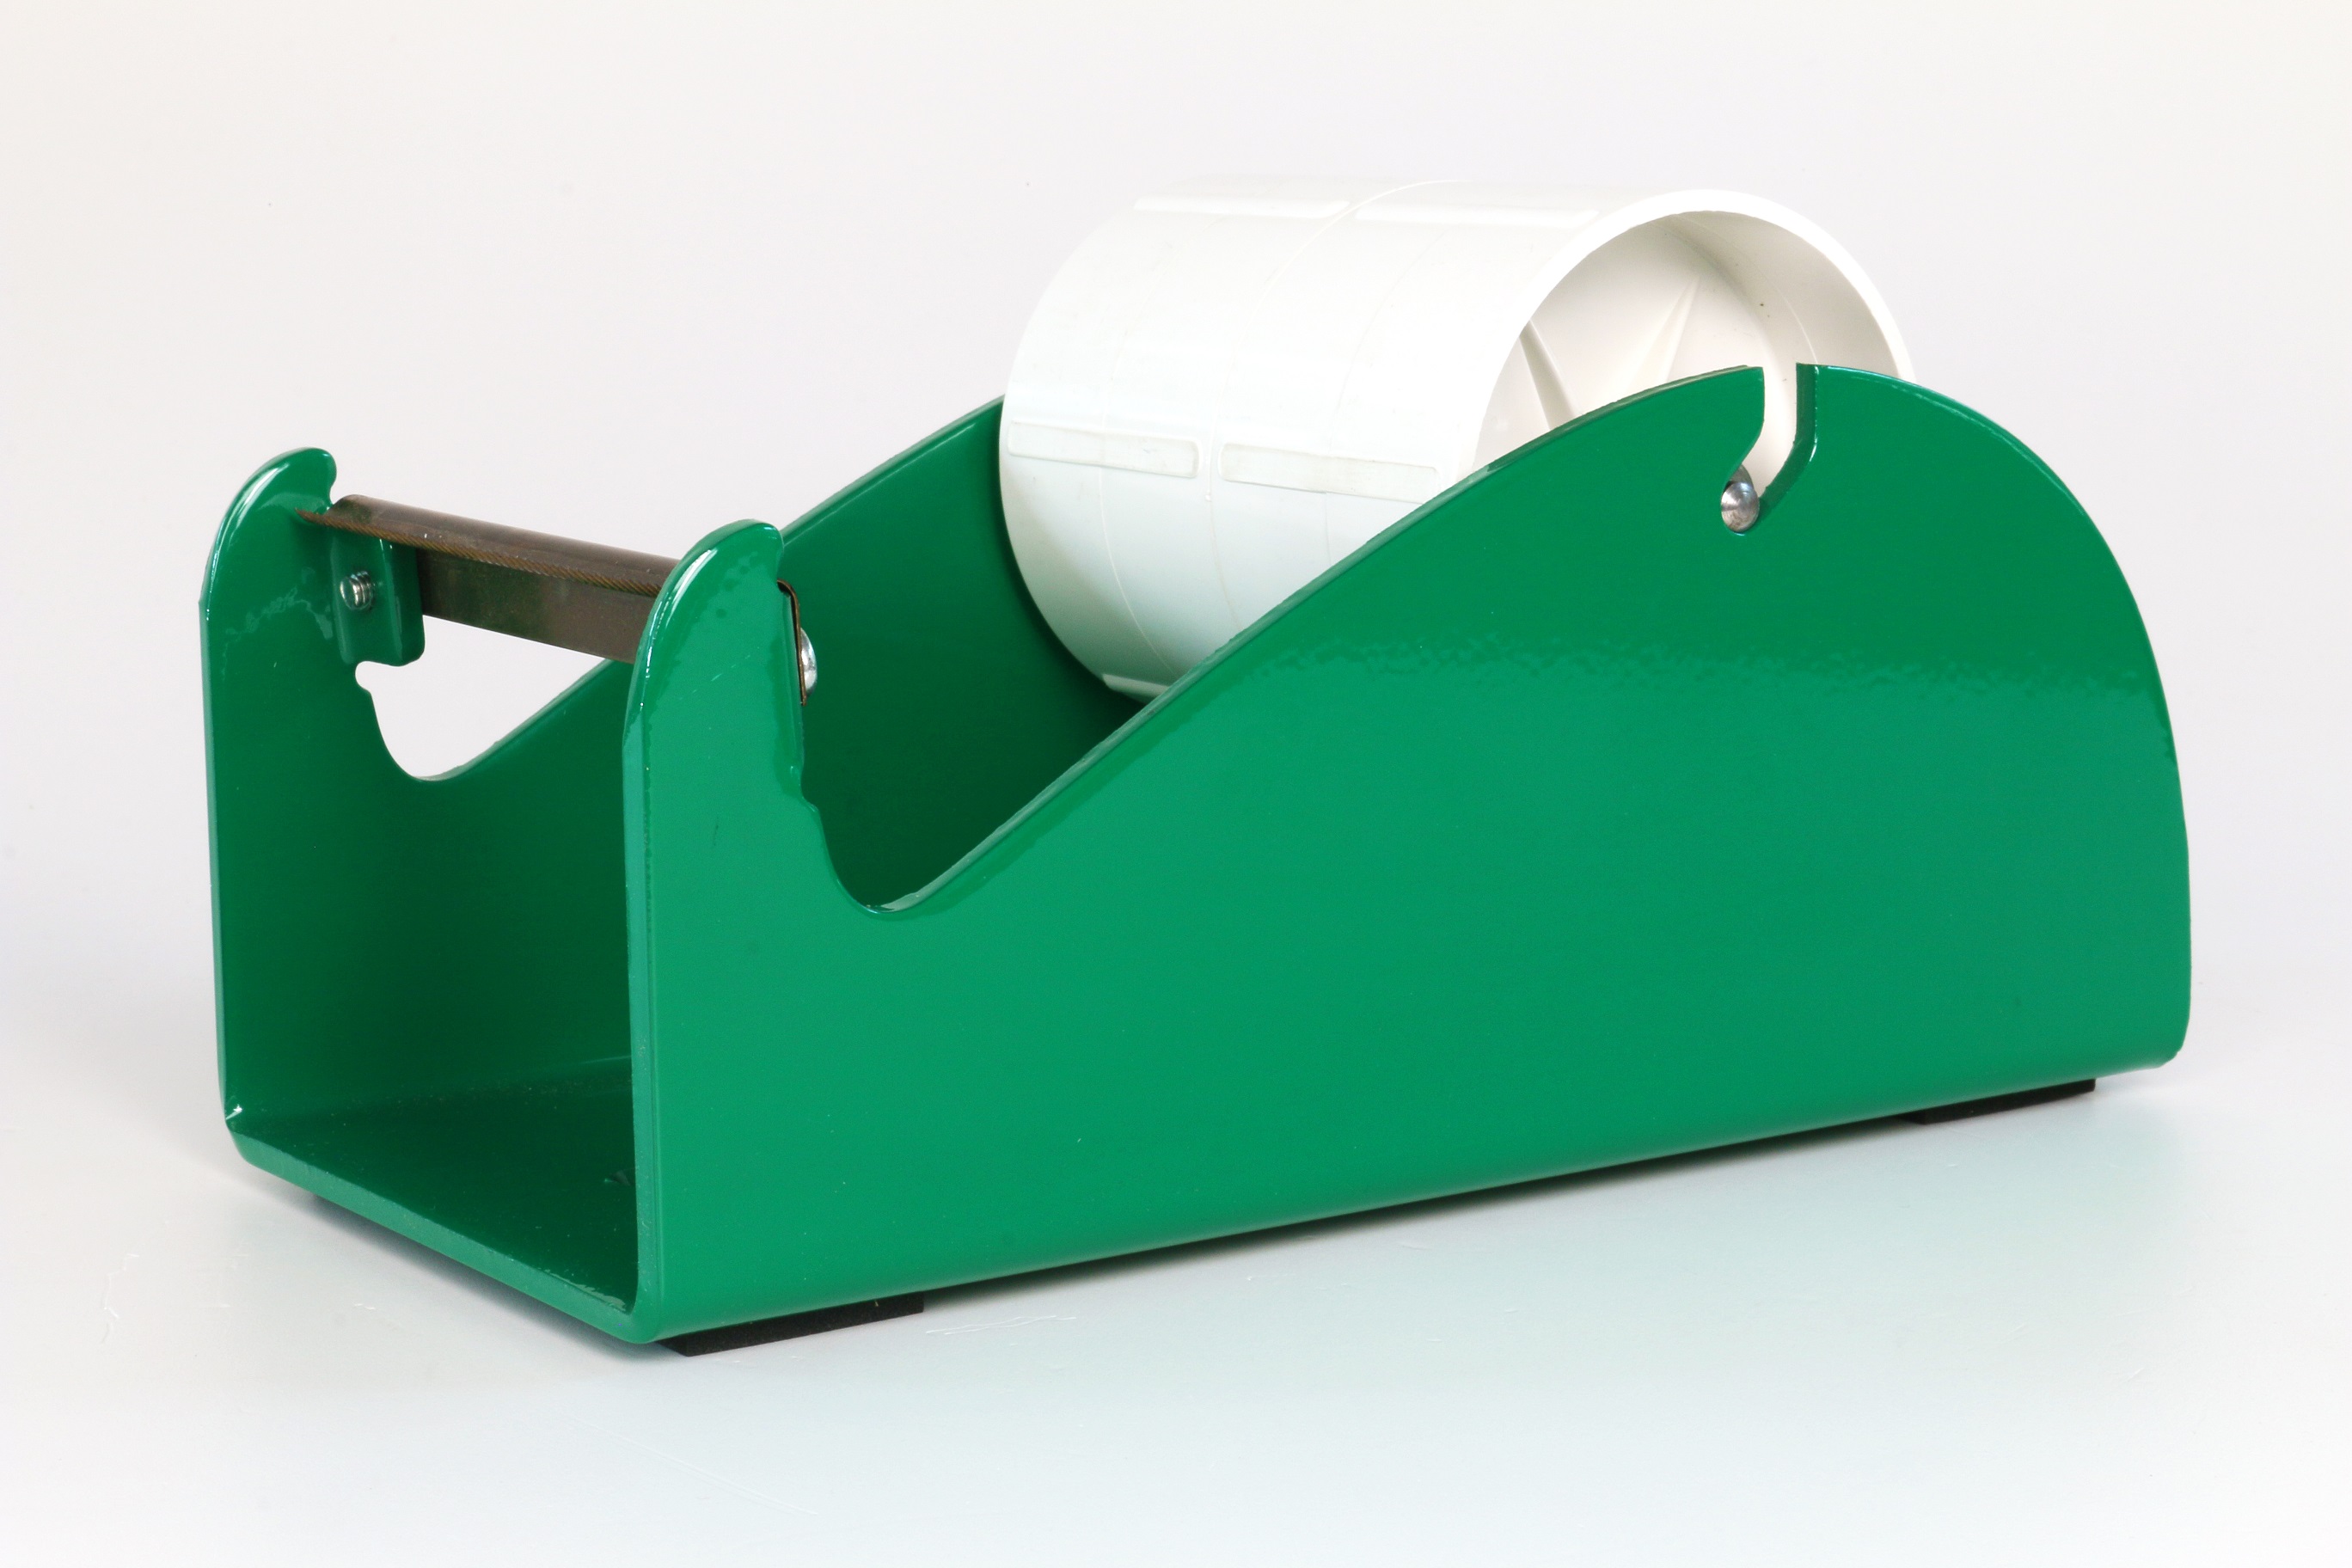 Klebeband-Tischabroller Grün, 100mm Bandbreite, 145mm Außendurchmesser